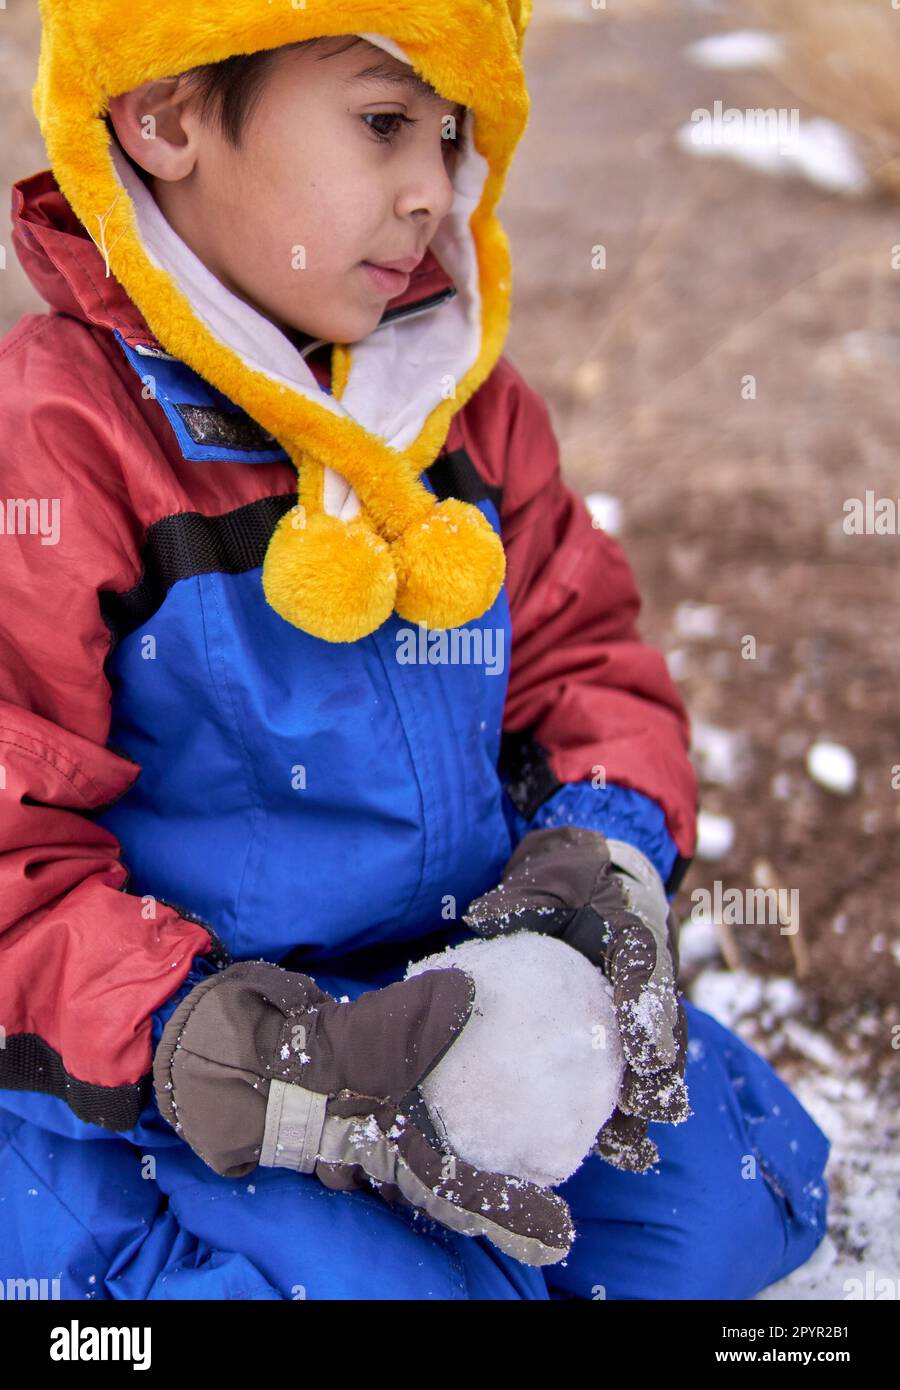 Ein nachdenklicher lateinischer kleiner Junge kniet im Schnee mit einem Schneeball in den Händen, trägt einen Schneeanzug, einen gelben Hut und Handschuhe. Stockfoto